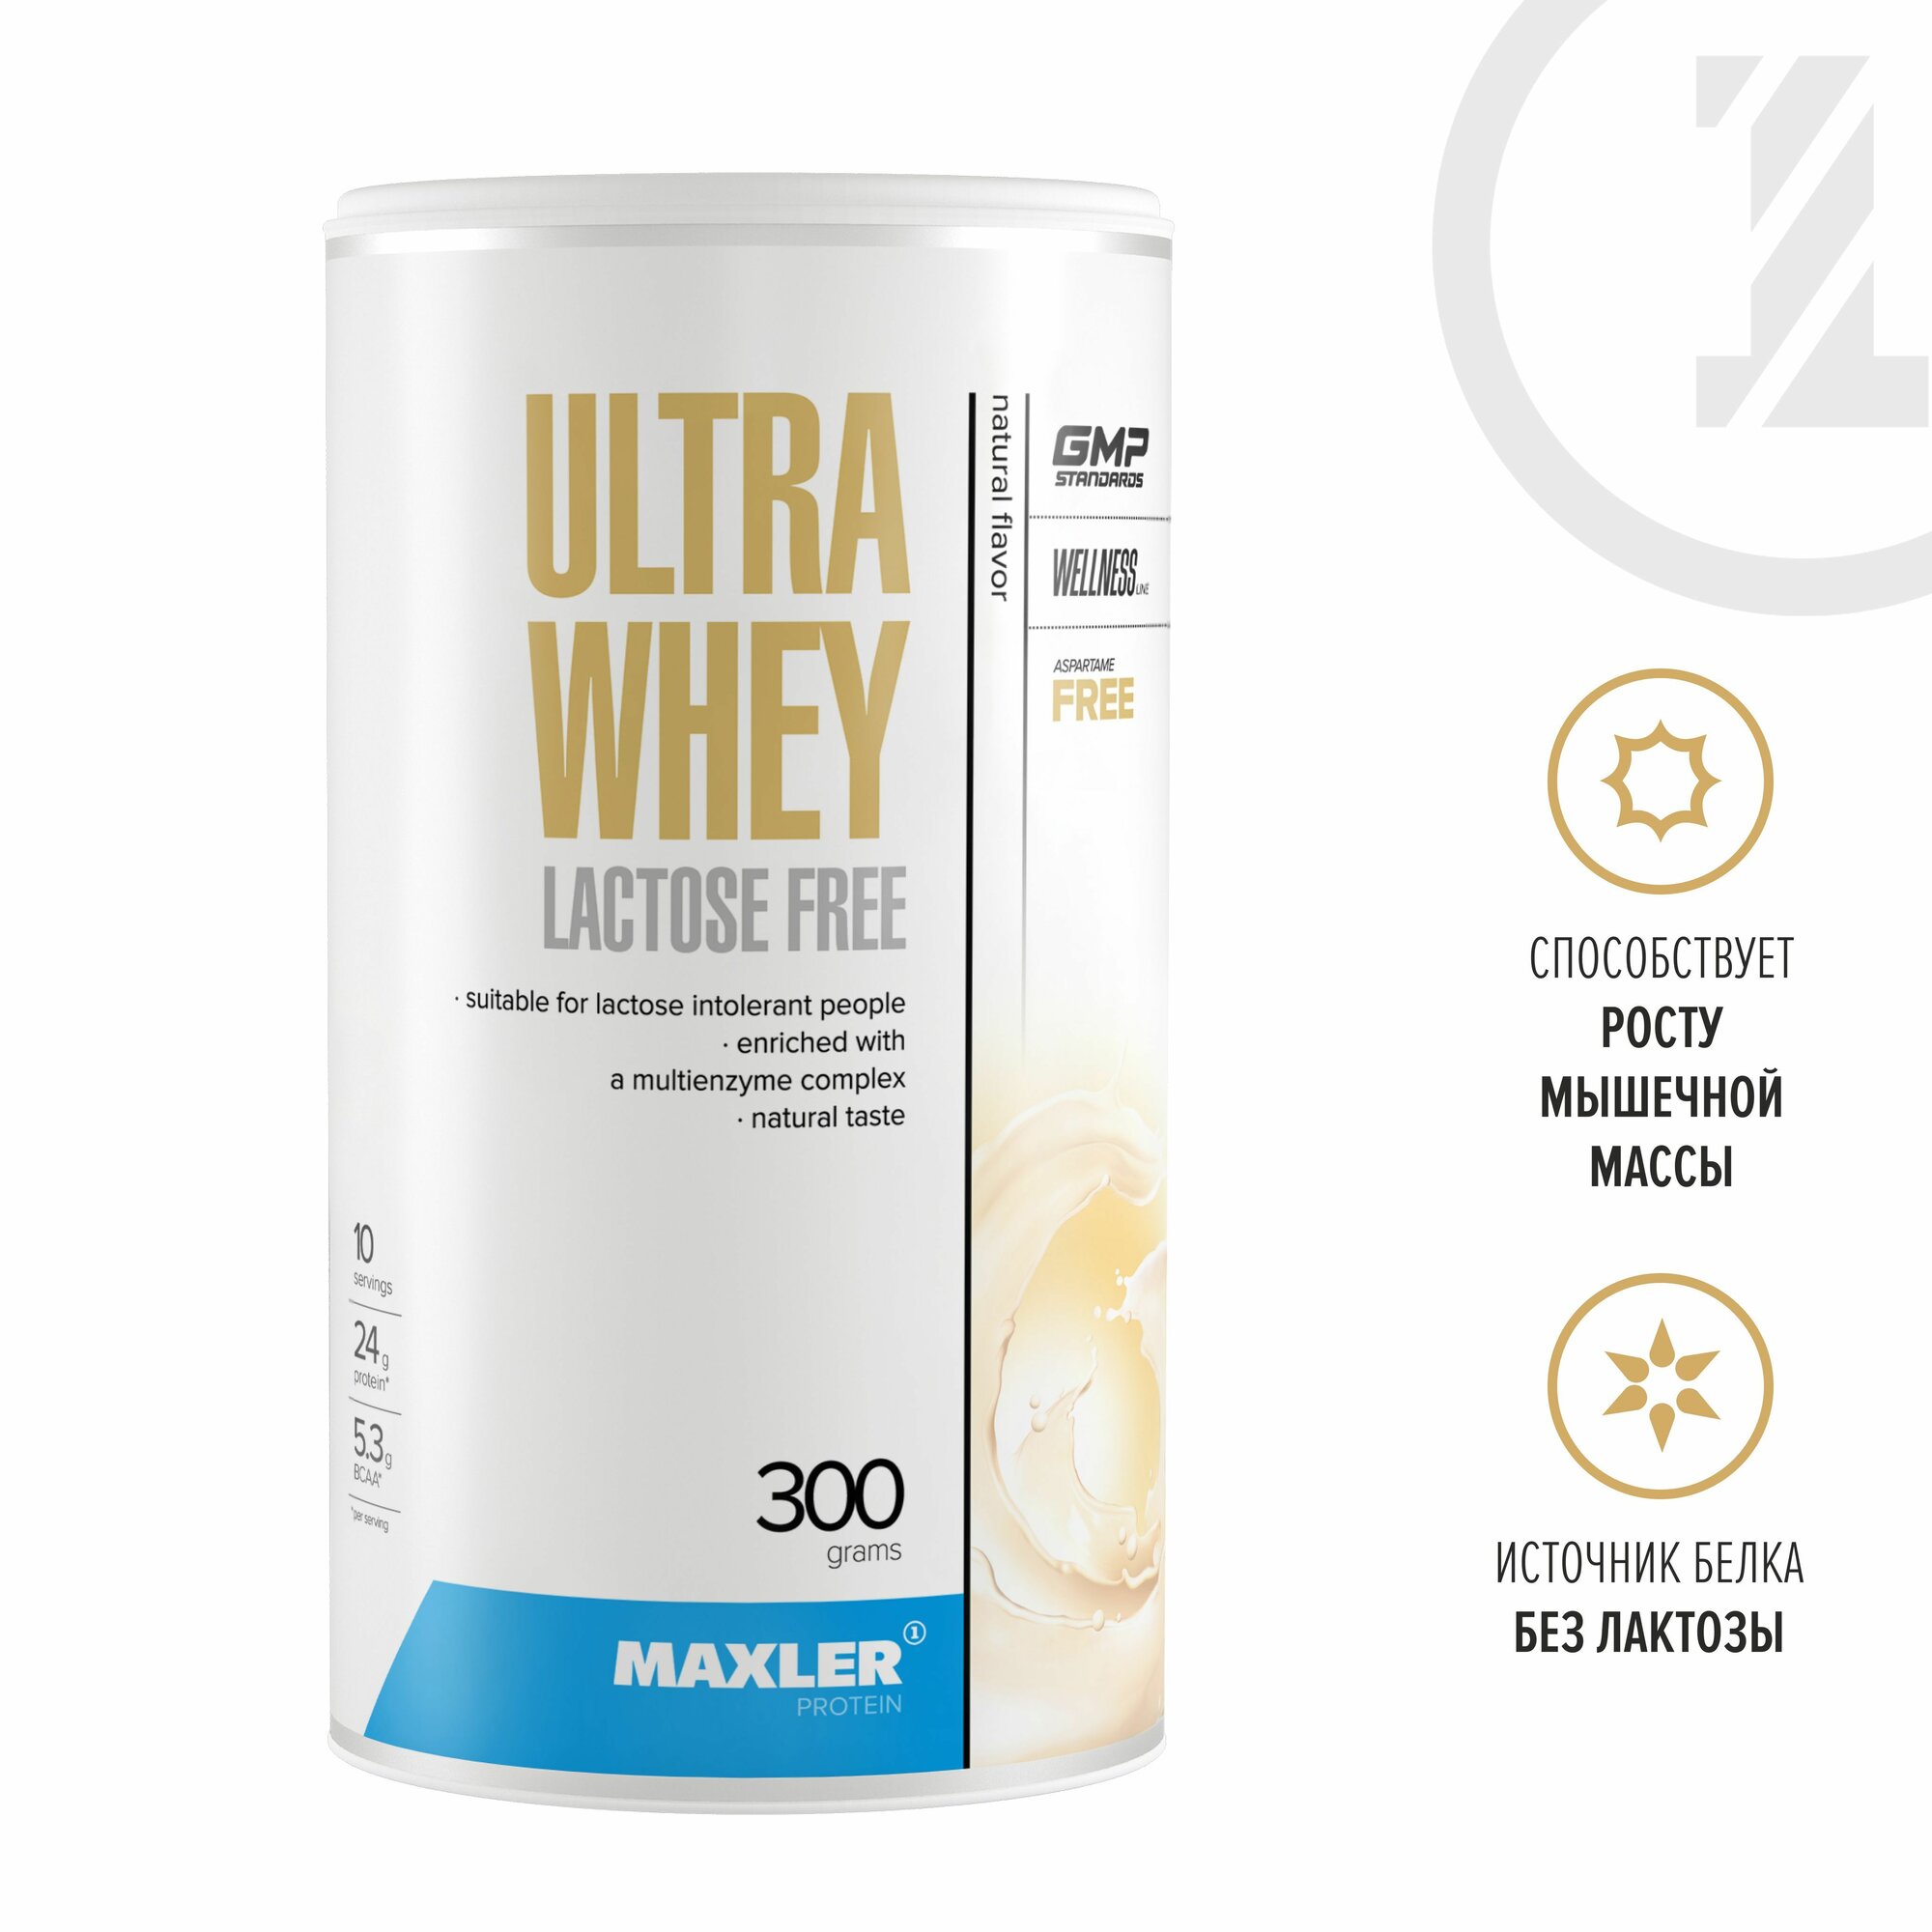 Безлактозный протеин Maxler Ultra Whey Lactose Free 300 гр. - Натуральный